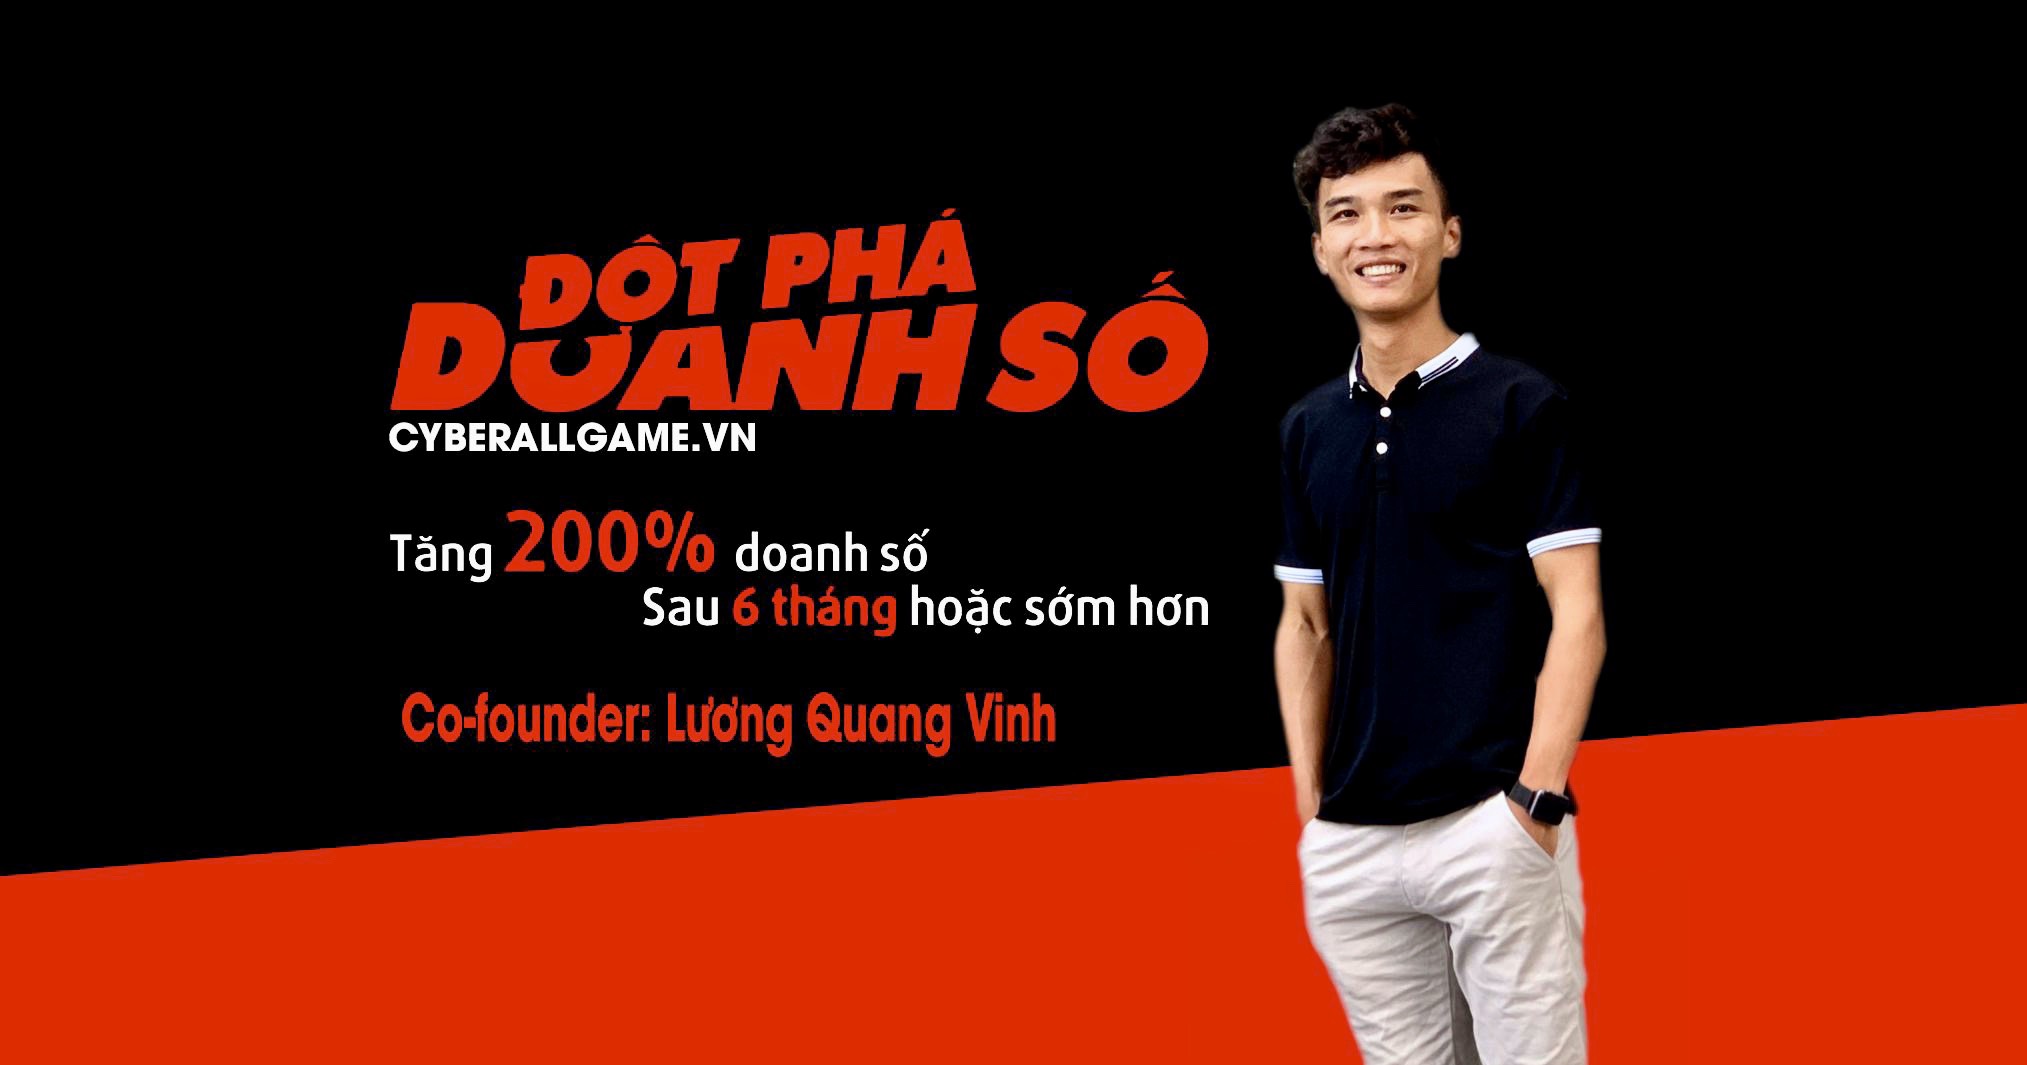 Co-founder: Lương Quang Vinh